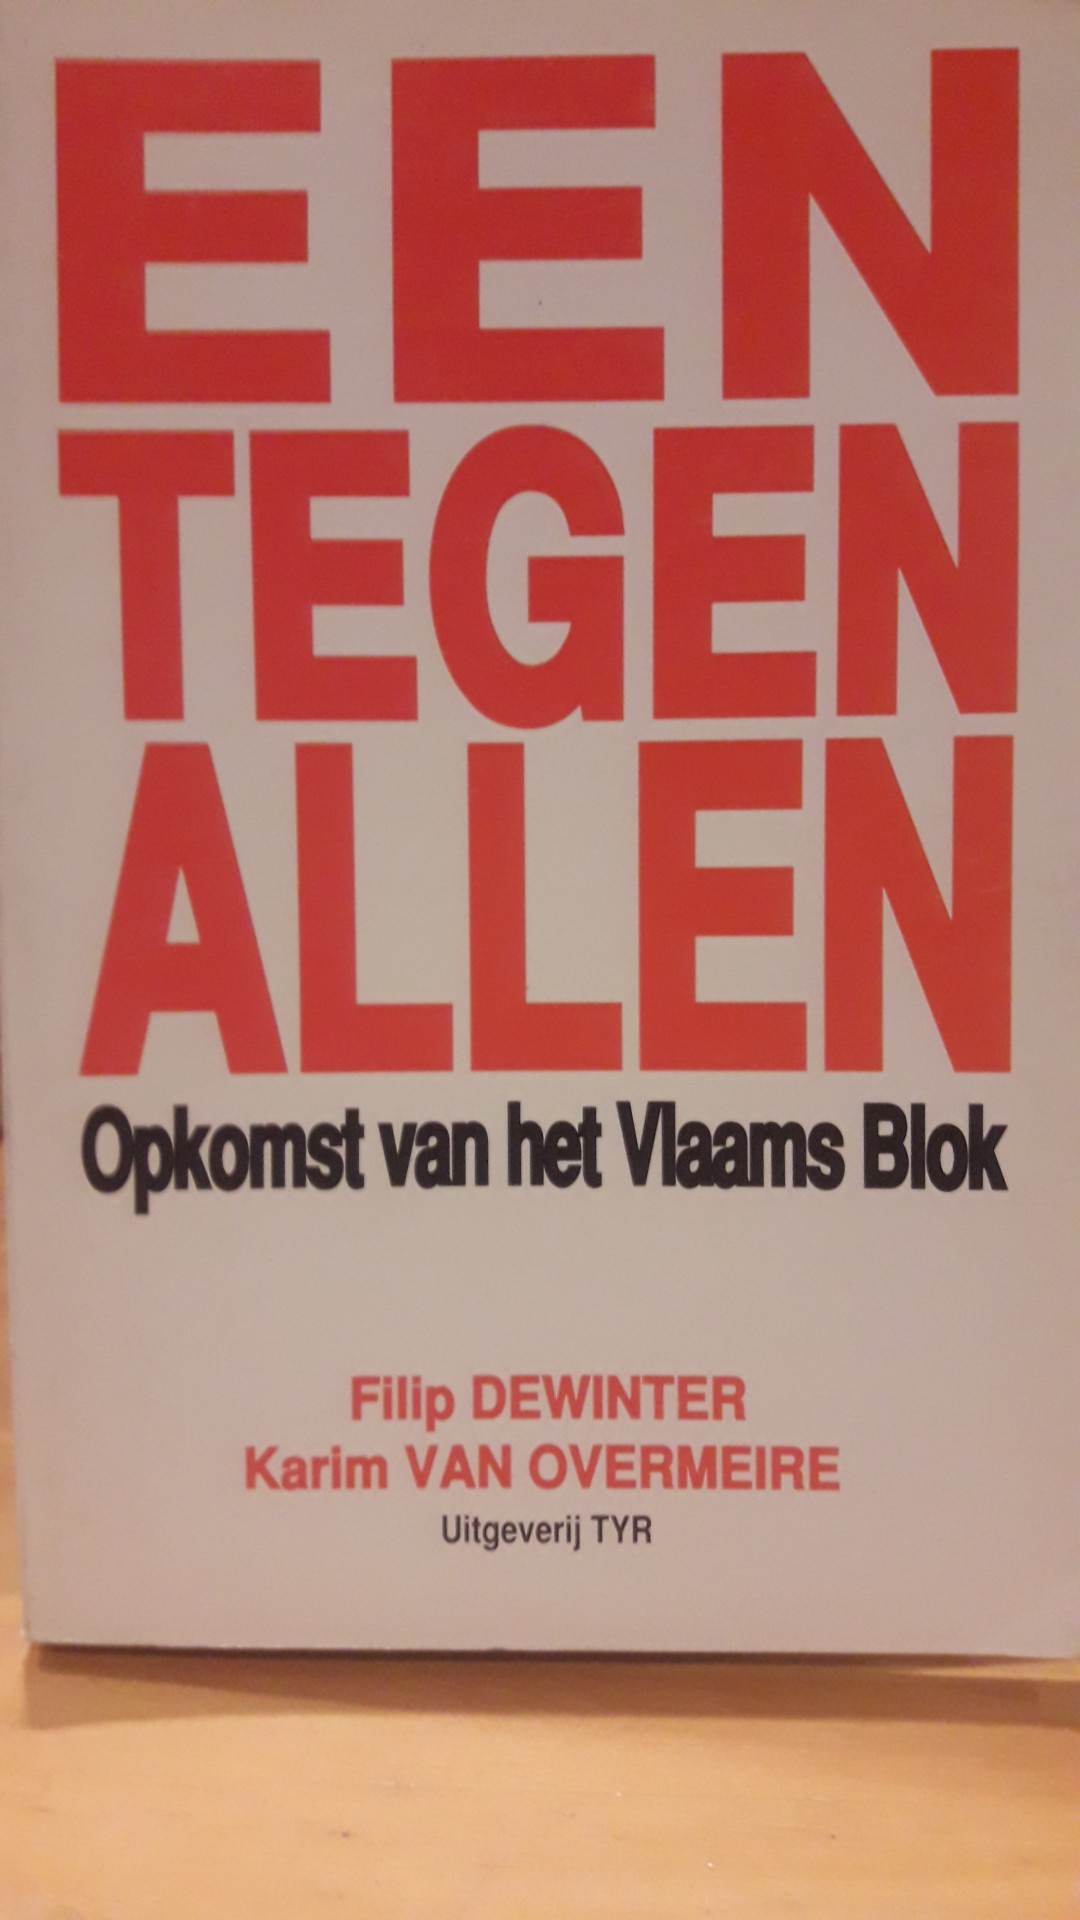 Vlaams Blok - Een tegen allen  - Filip De Winter / 306  blz